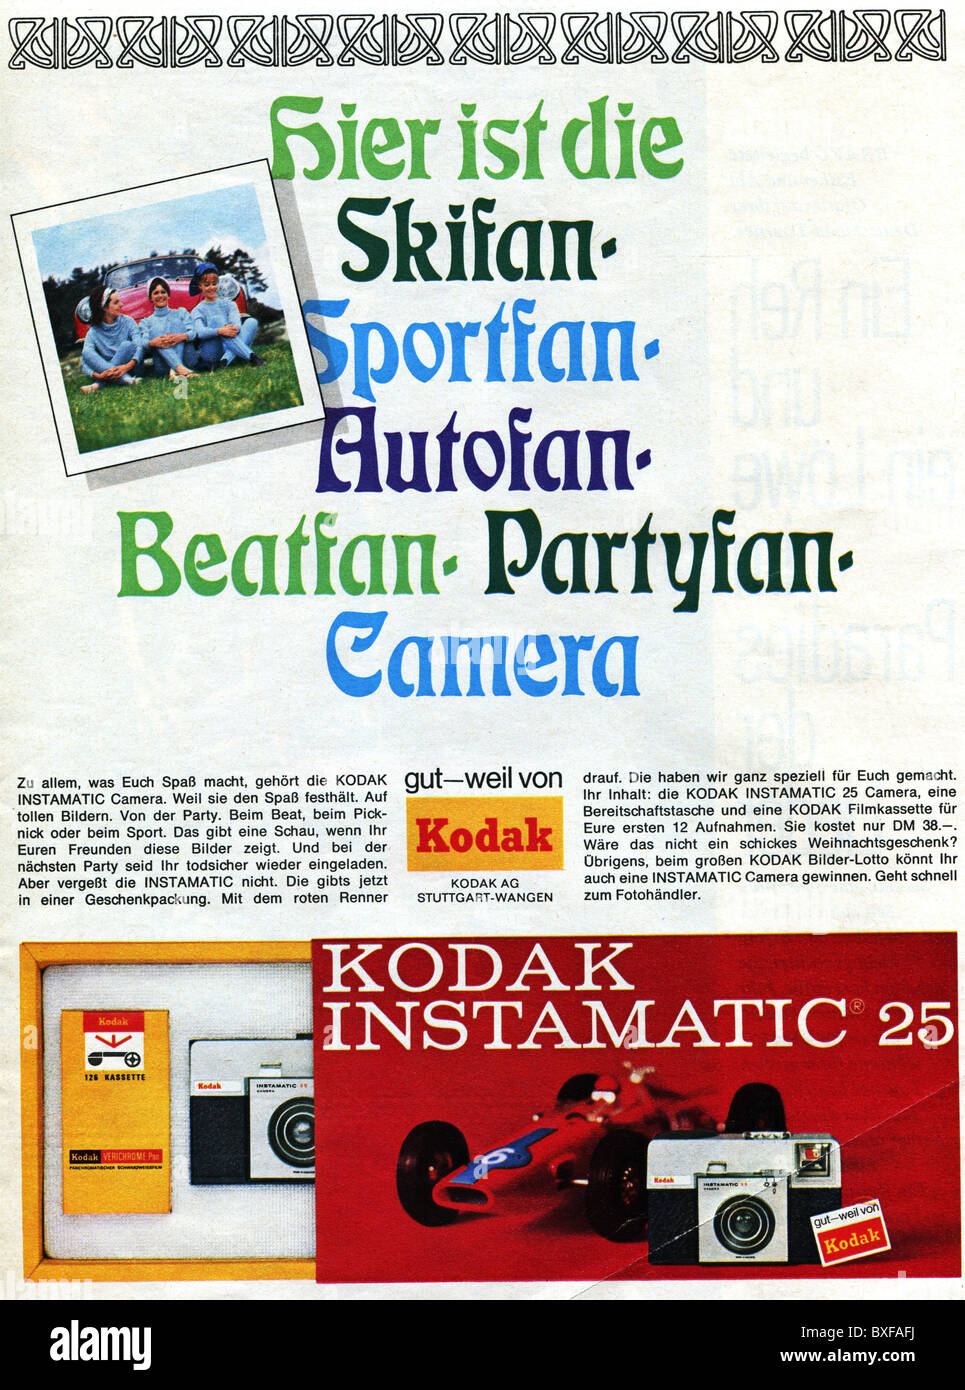 Pubblicità, fotografia, pubblicità per fotocamera Kodak Instamatic 25, dalla rivista 'Bravo', n° 50, 4.12.1967, Germania, diritti aggiuntivi-clearences-non disponibile Foto Stock